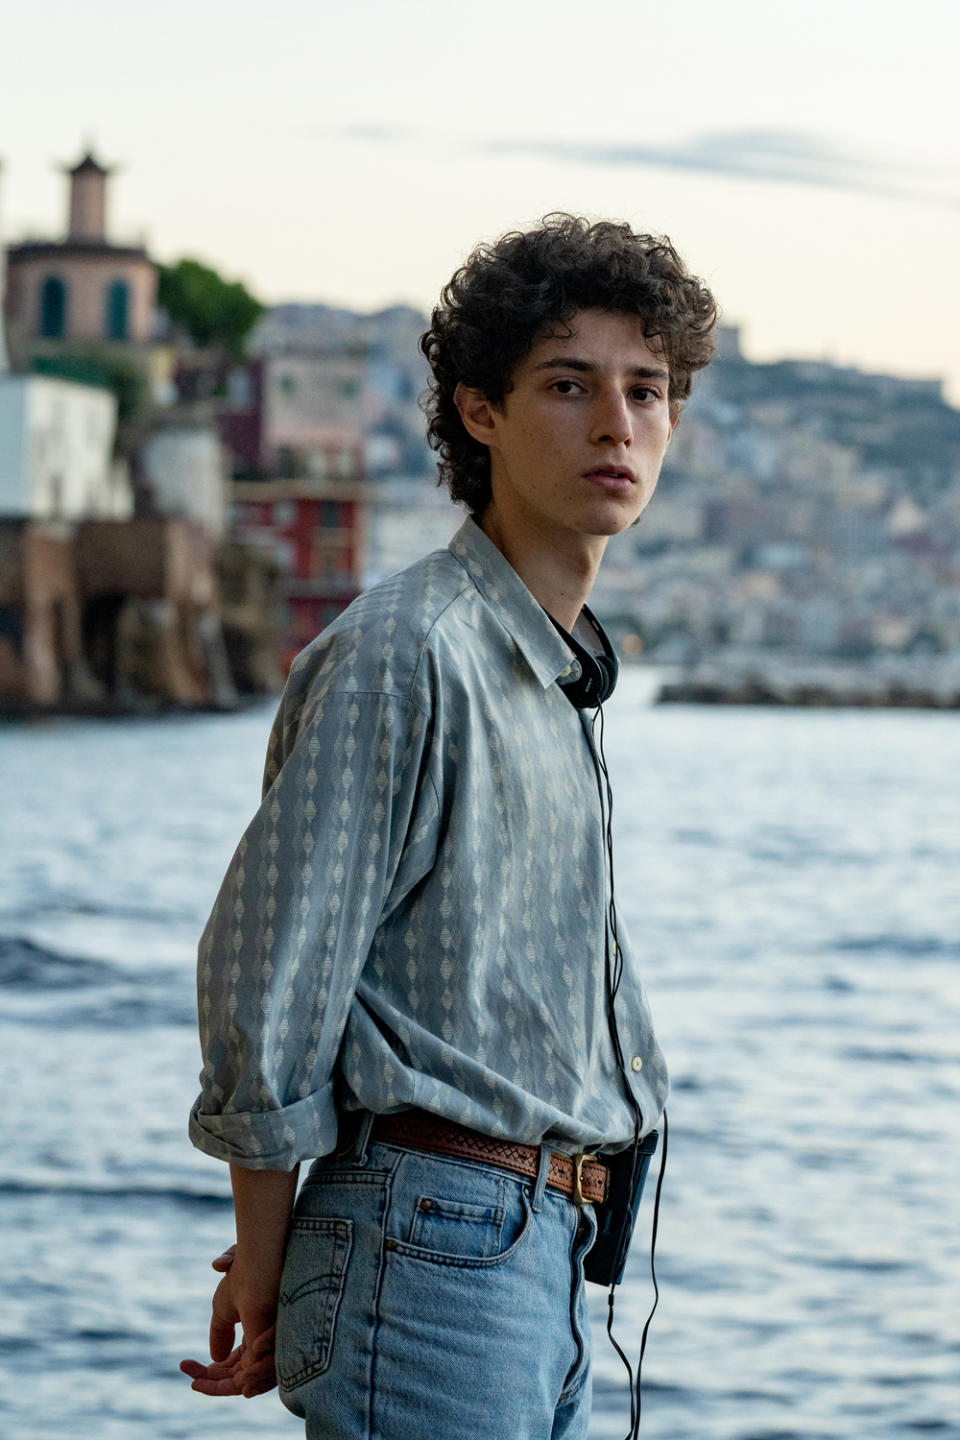 Filippo Scotti will star as Fabietto Schisa in Sorrentino’s new film (Gianni Fiorito/Netflix)